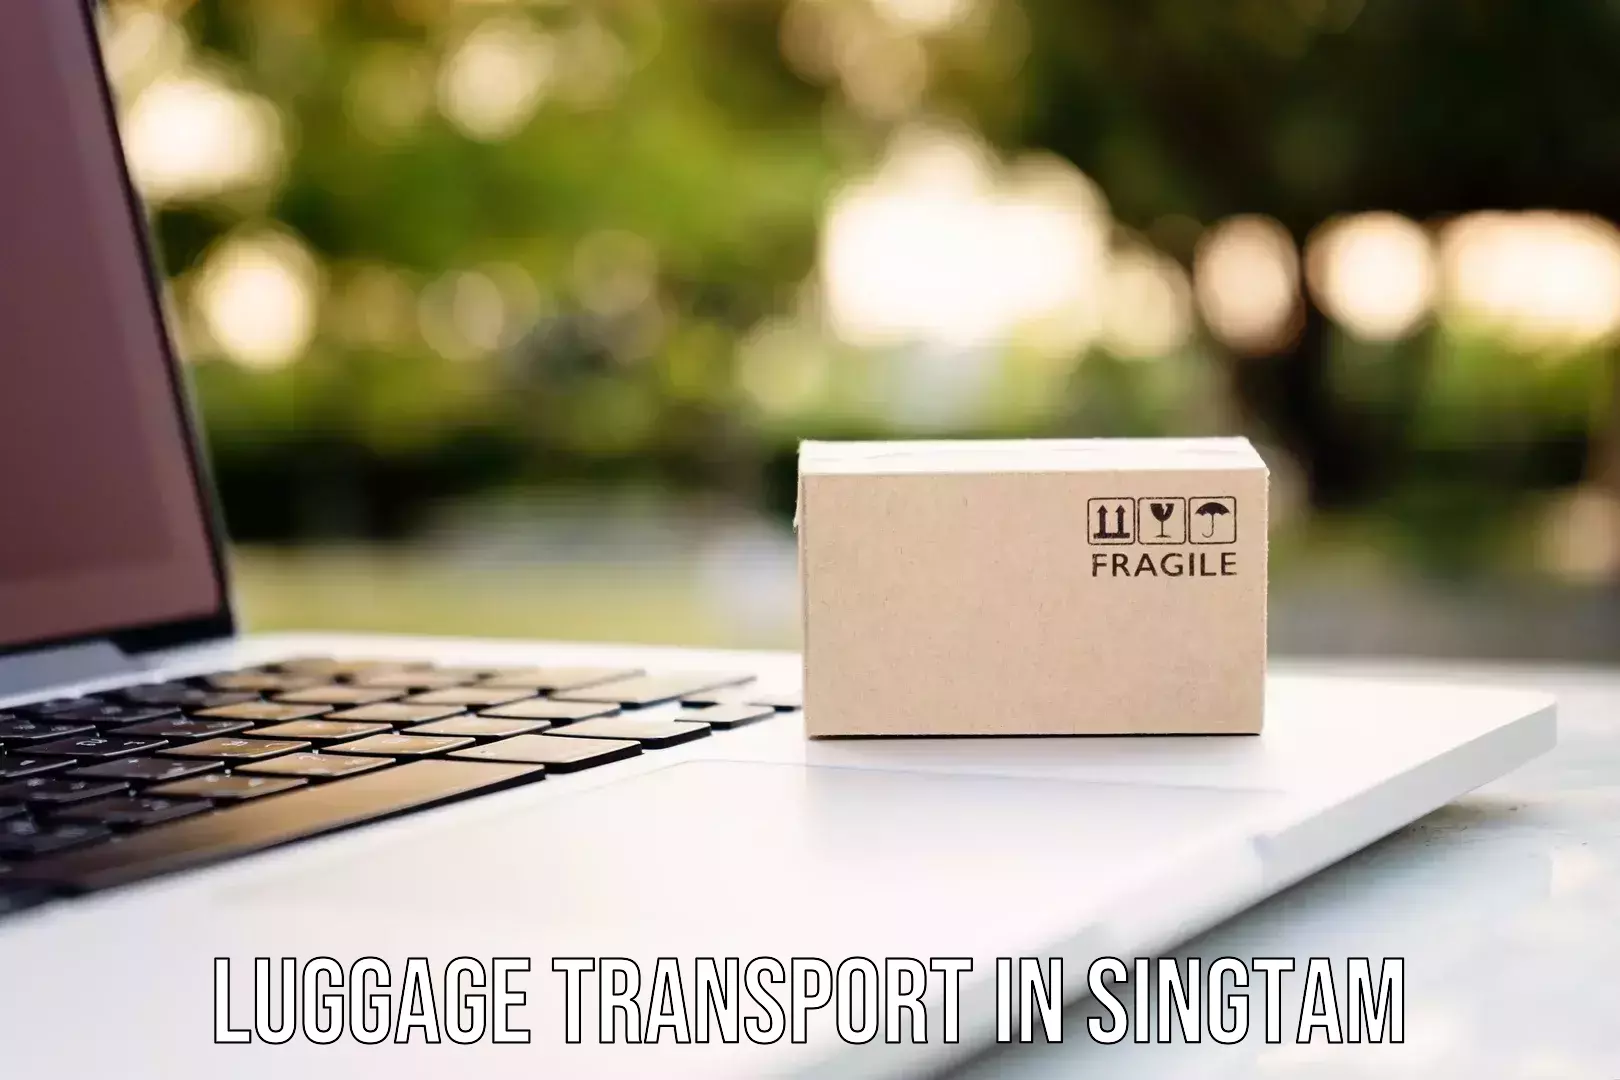 Luggage transport rates calculator in Singtam